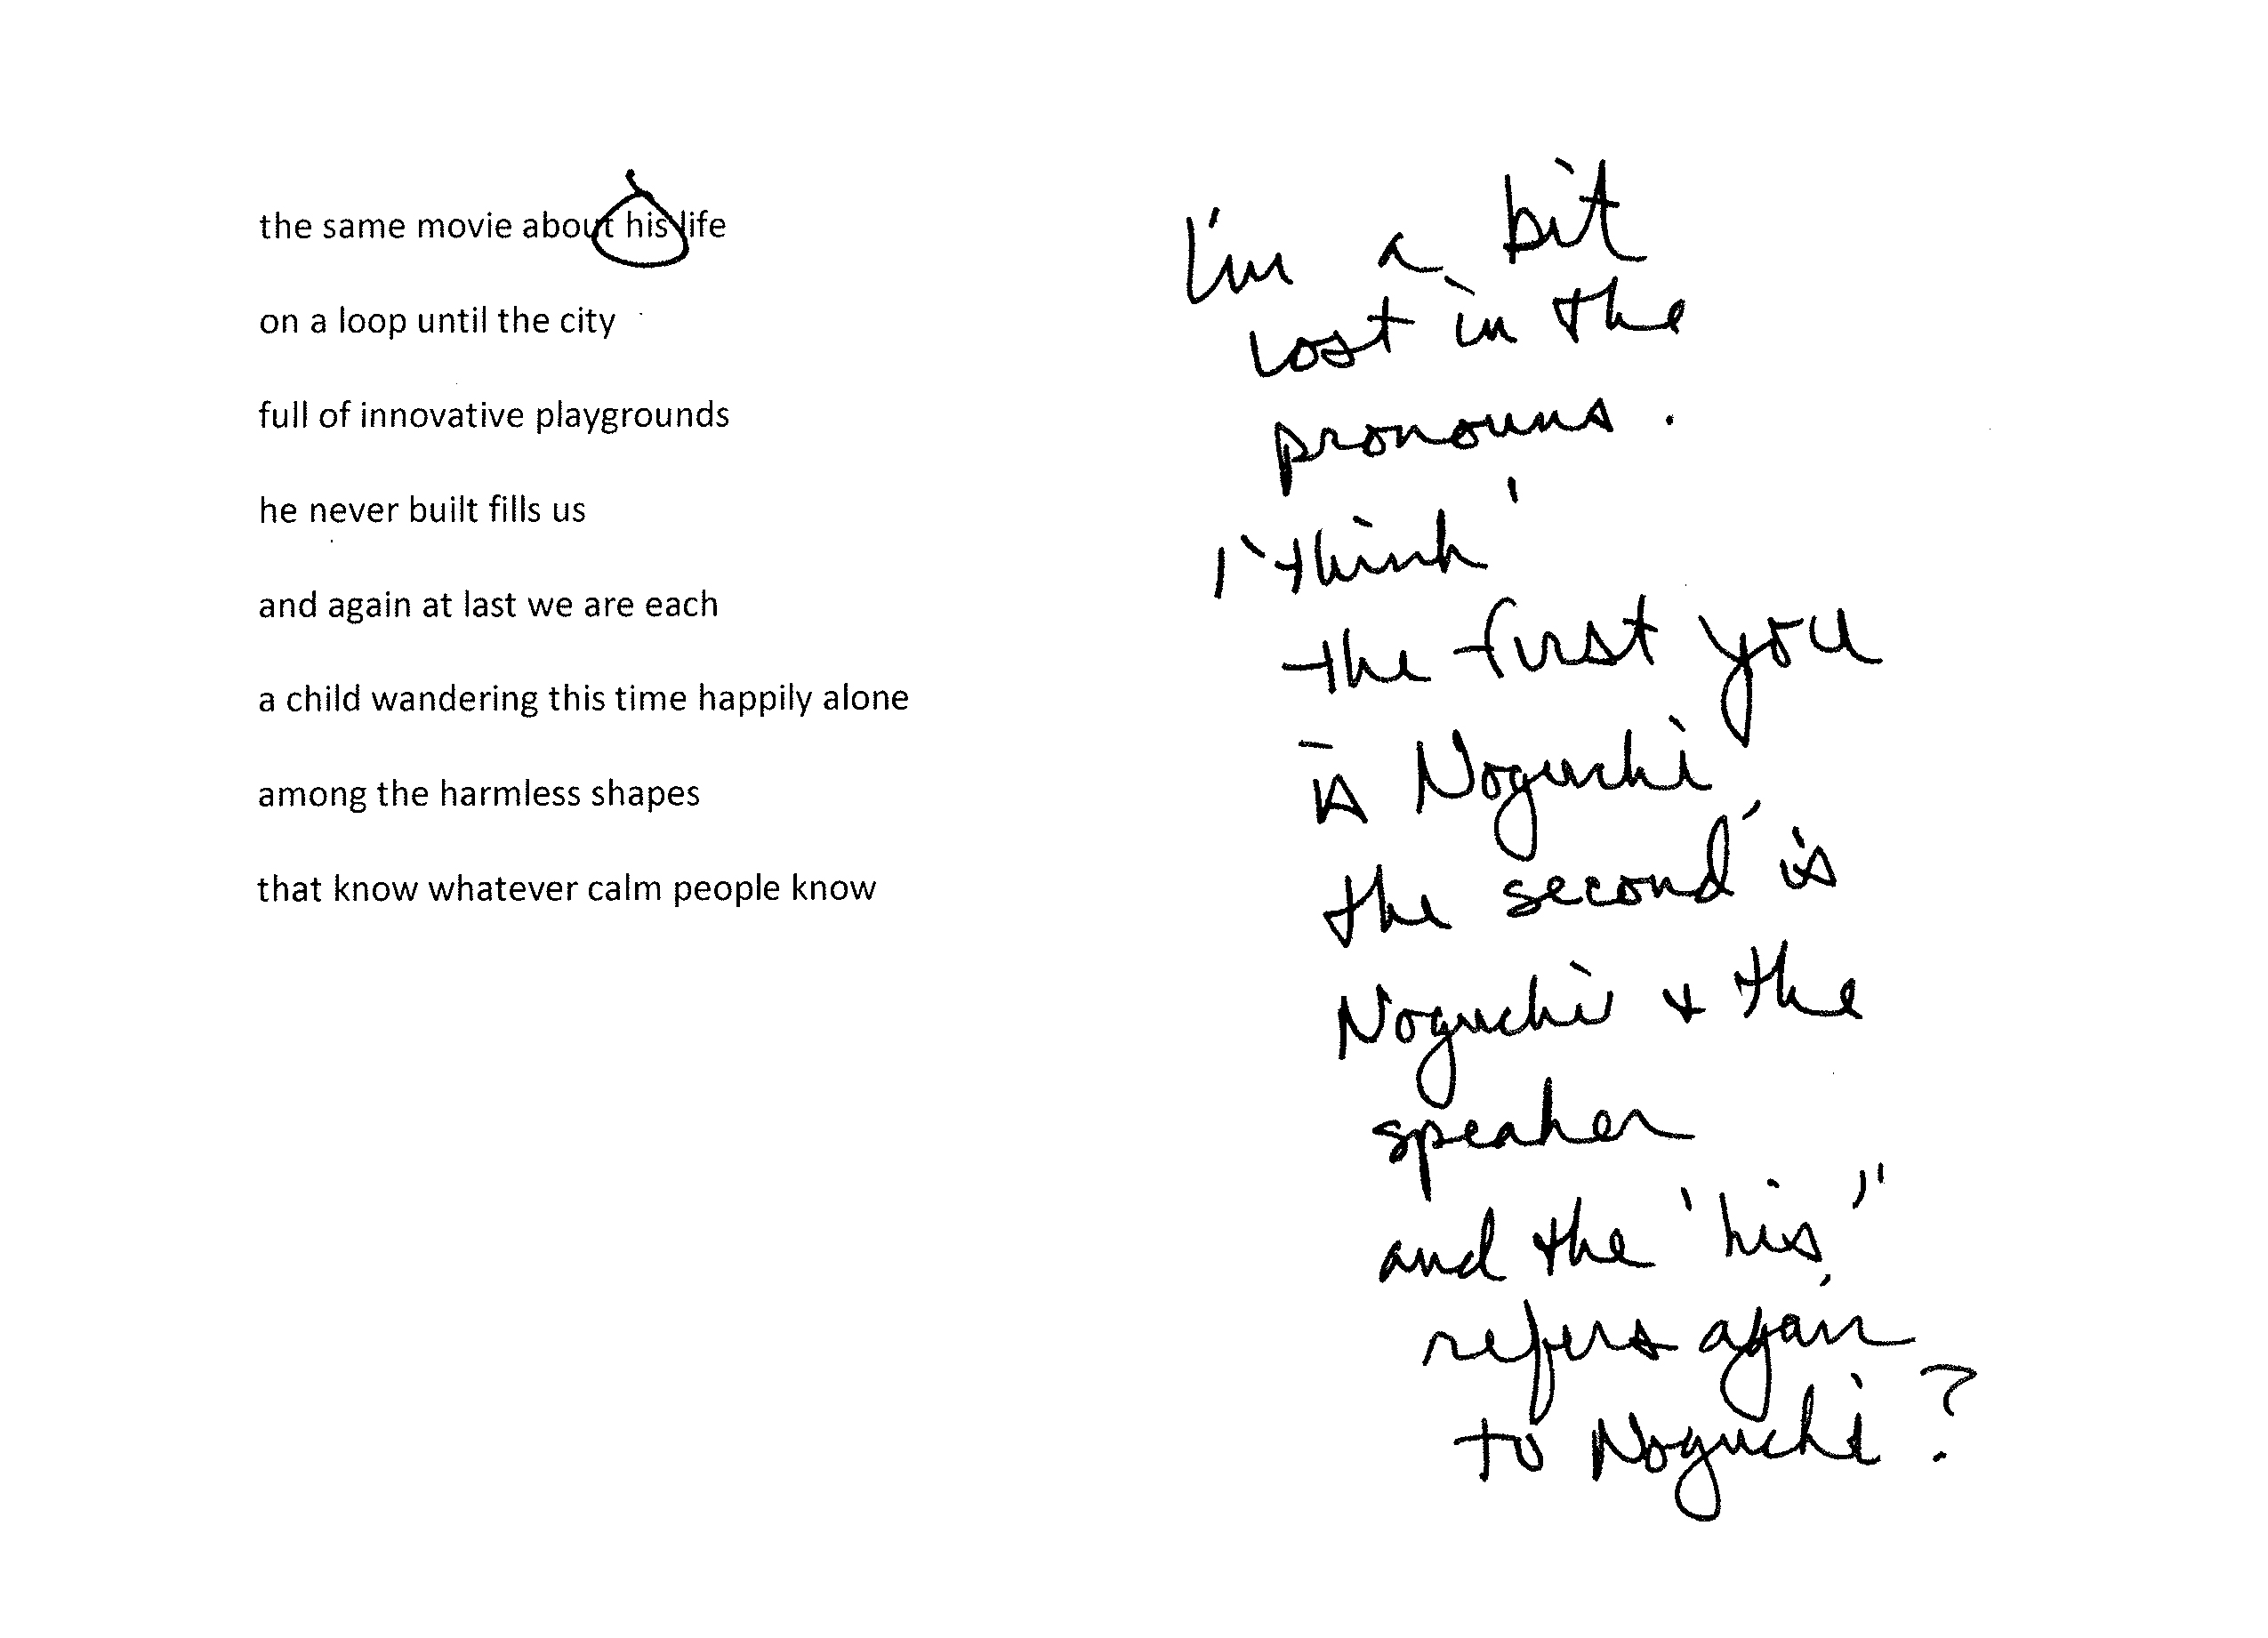 The Paris Review - How to Write a Poem about Noguchi - The Paris